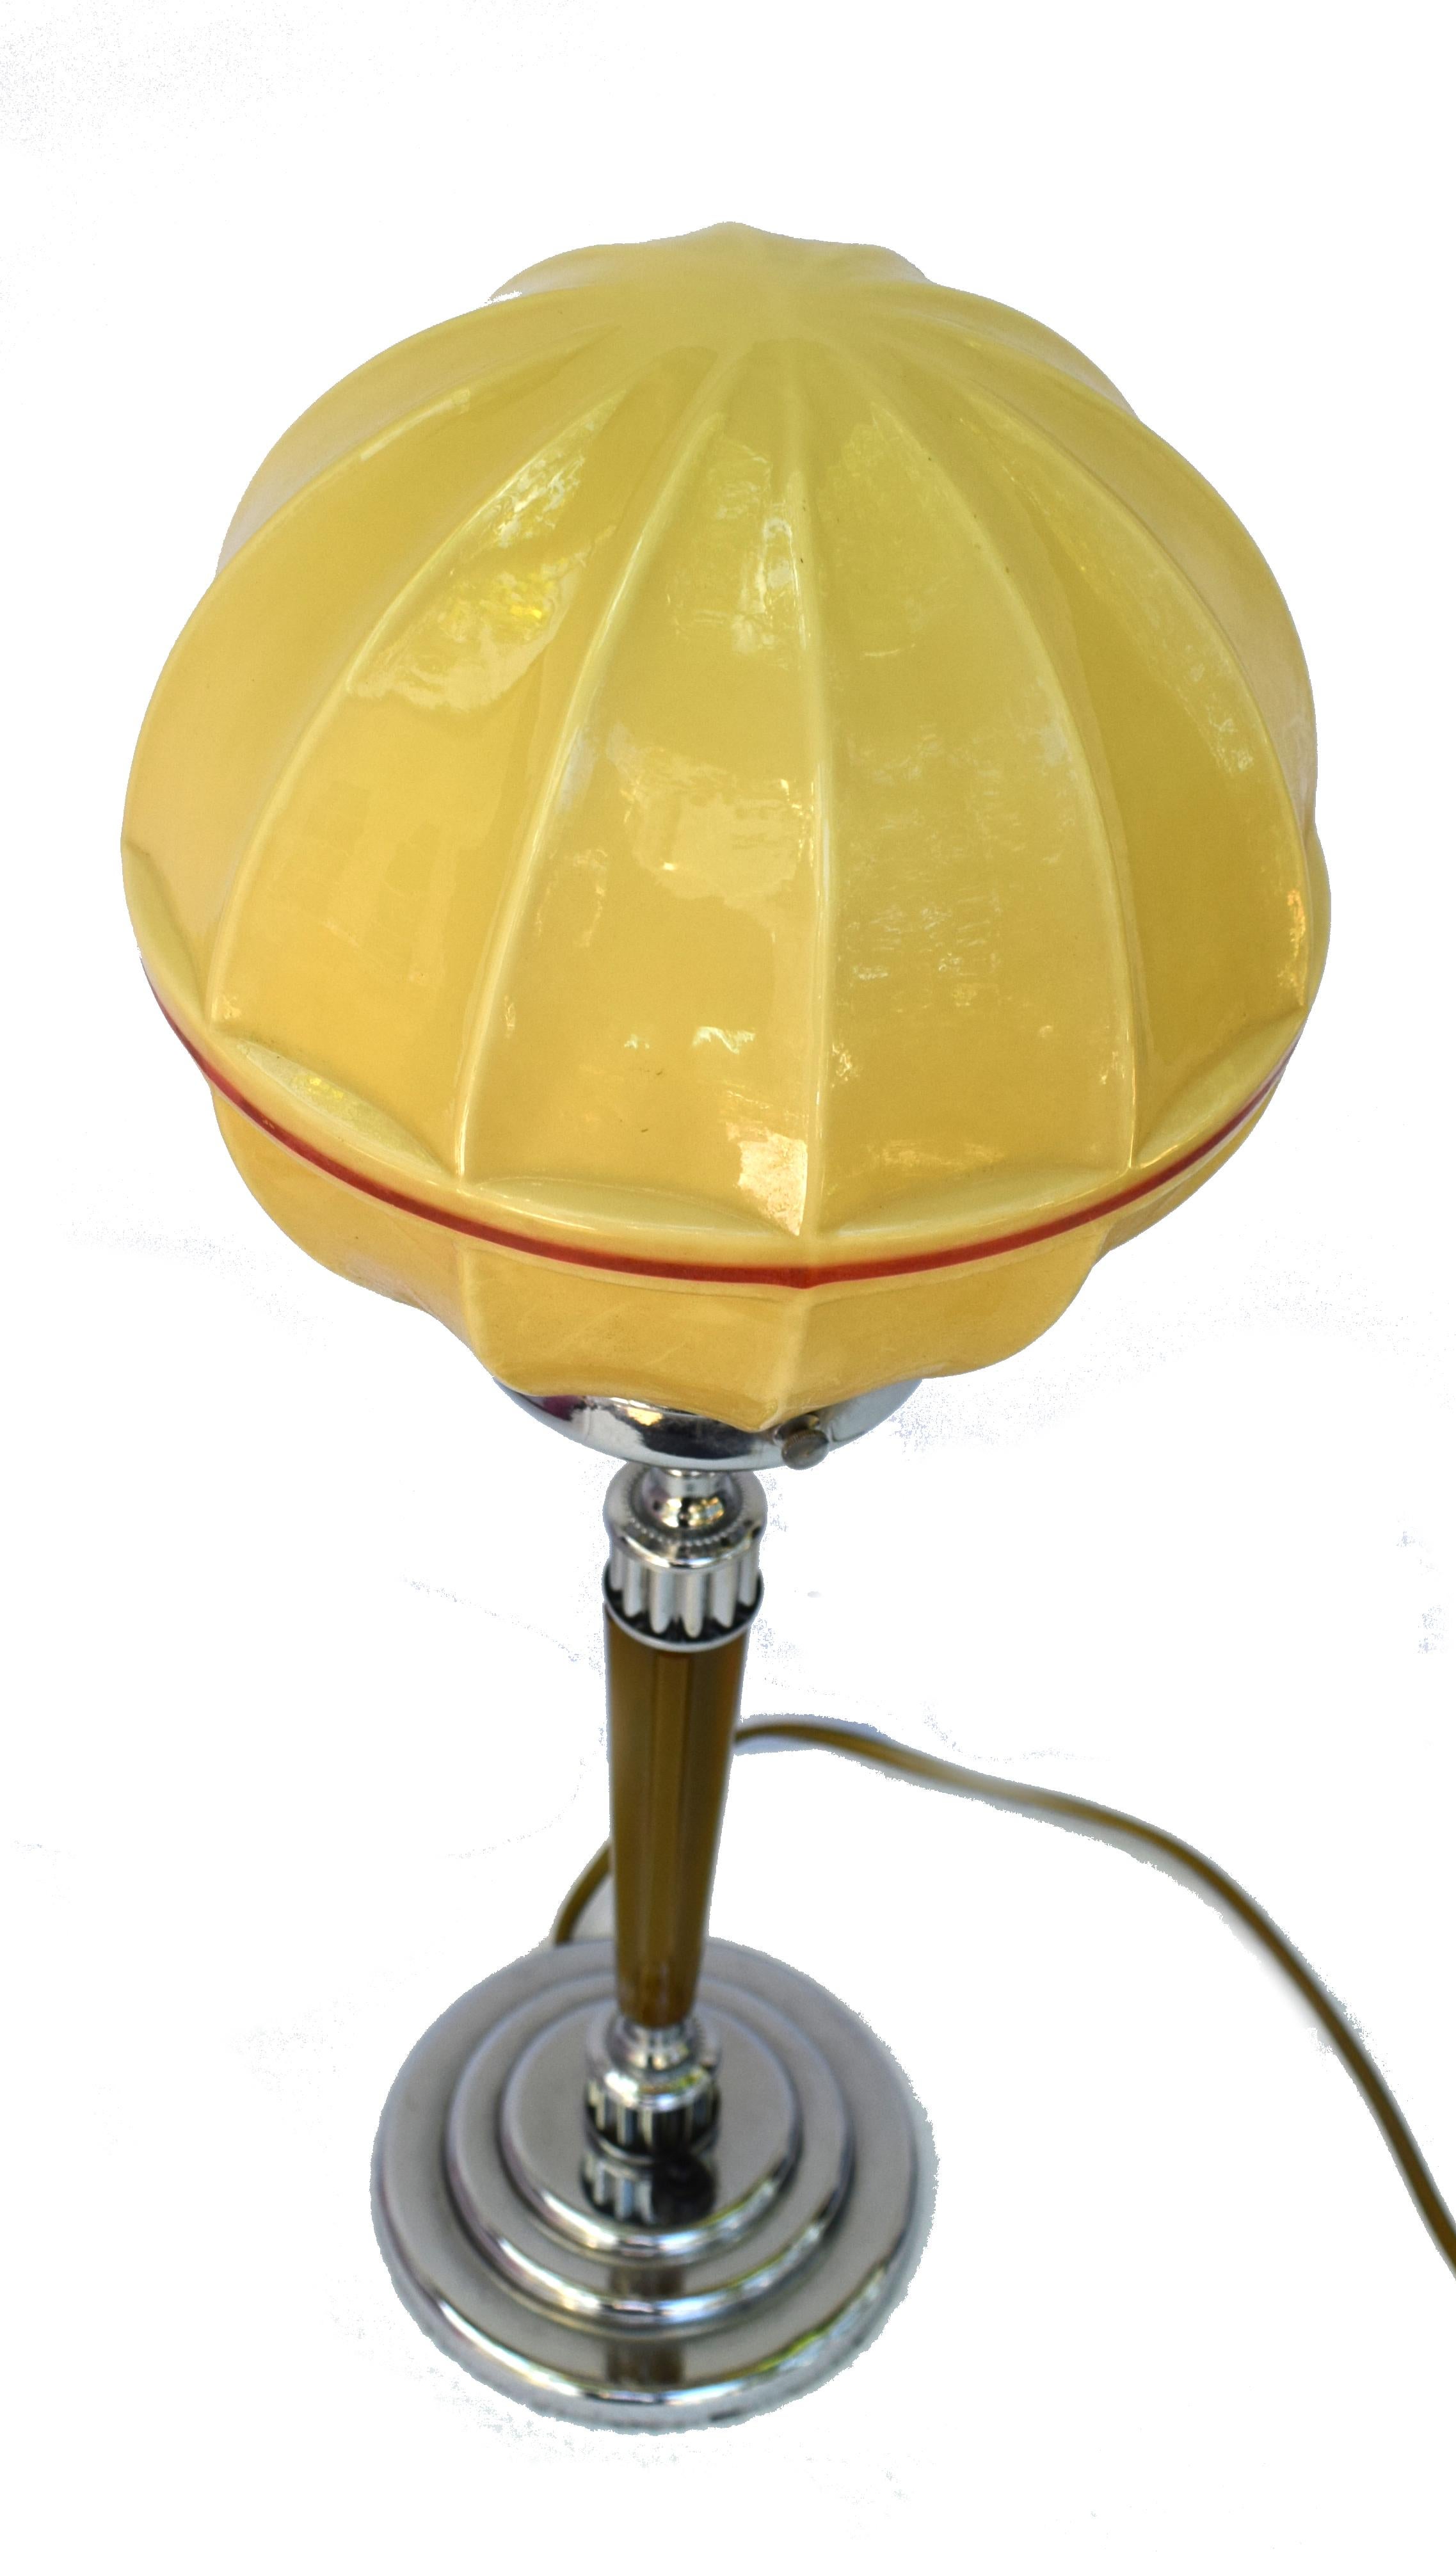 Hübsche Art-Déco-Tischlampe aus den 1930er Jahren mit einem Stiel aus karamellfarbenem, geripptem Katalin und Bakelit. Der Sockel ist abgestuft und rund verchromt, was ein Gleichgewicht mit dem verchromten Hals und der Galerie schafft. Die Leuchte